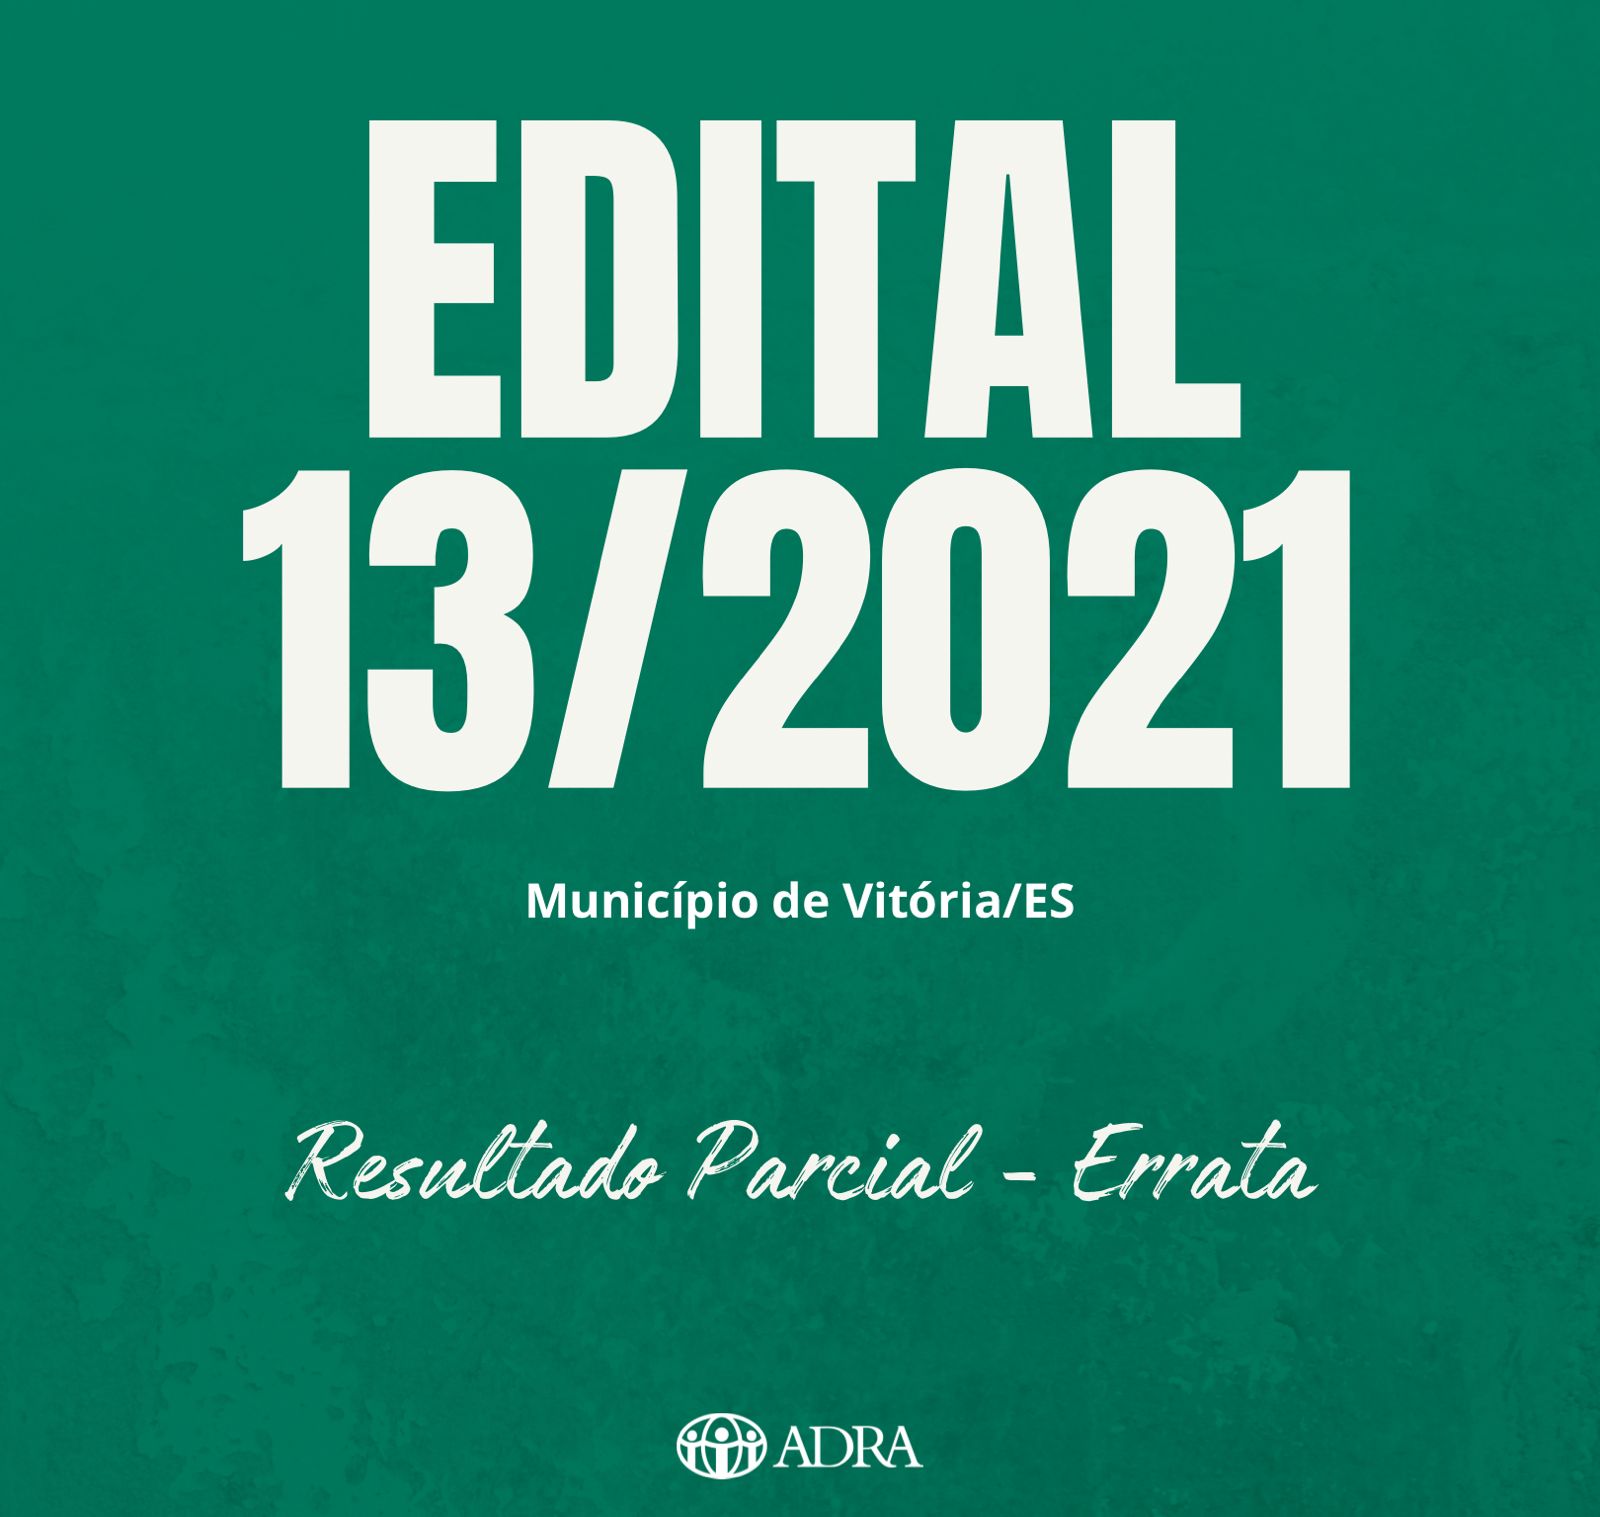 EDITAL 013/2021 – RESULTADO PARCIAL – ERRATA